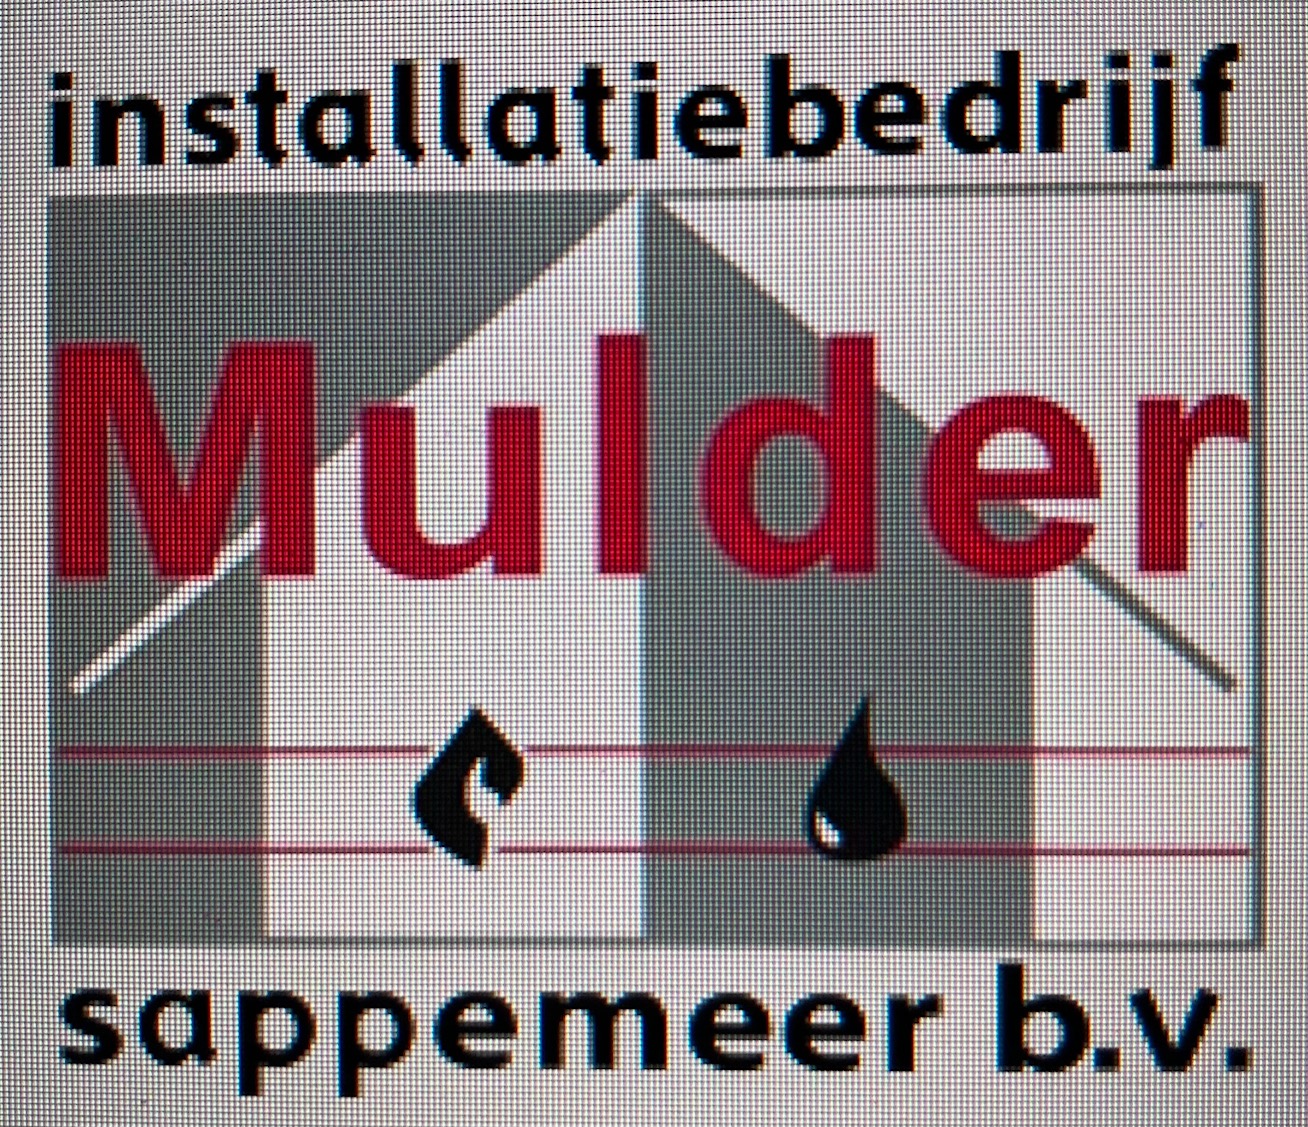 Installatiebedrijf Mulder - Sappemeer